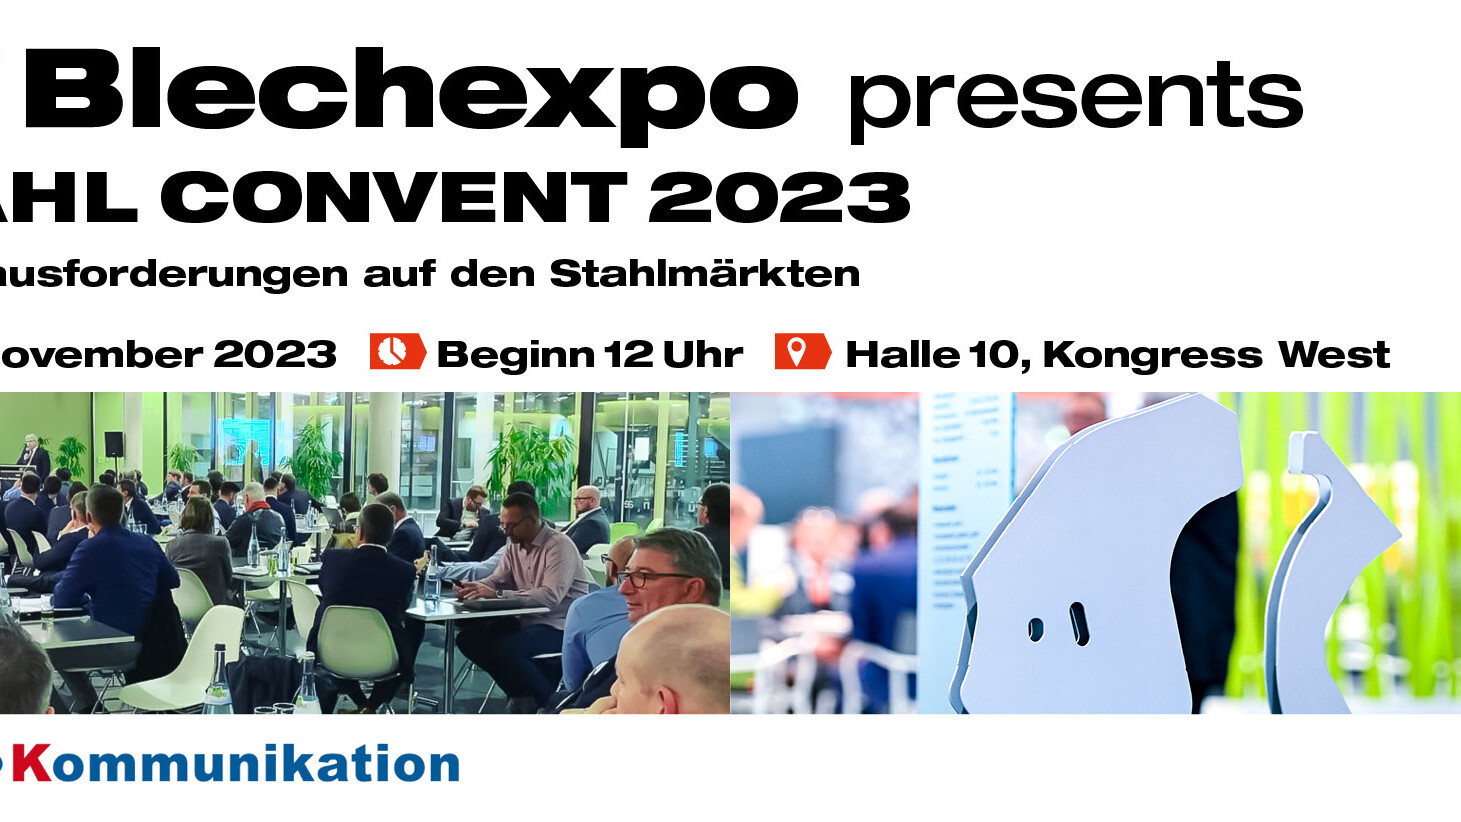 Blechexpo Internationale Fachmesse für Blechbearbeitung Blechexpo Stahlkonvent 2023 1920x822 website 01 de web uai